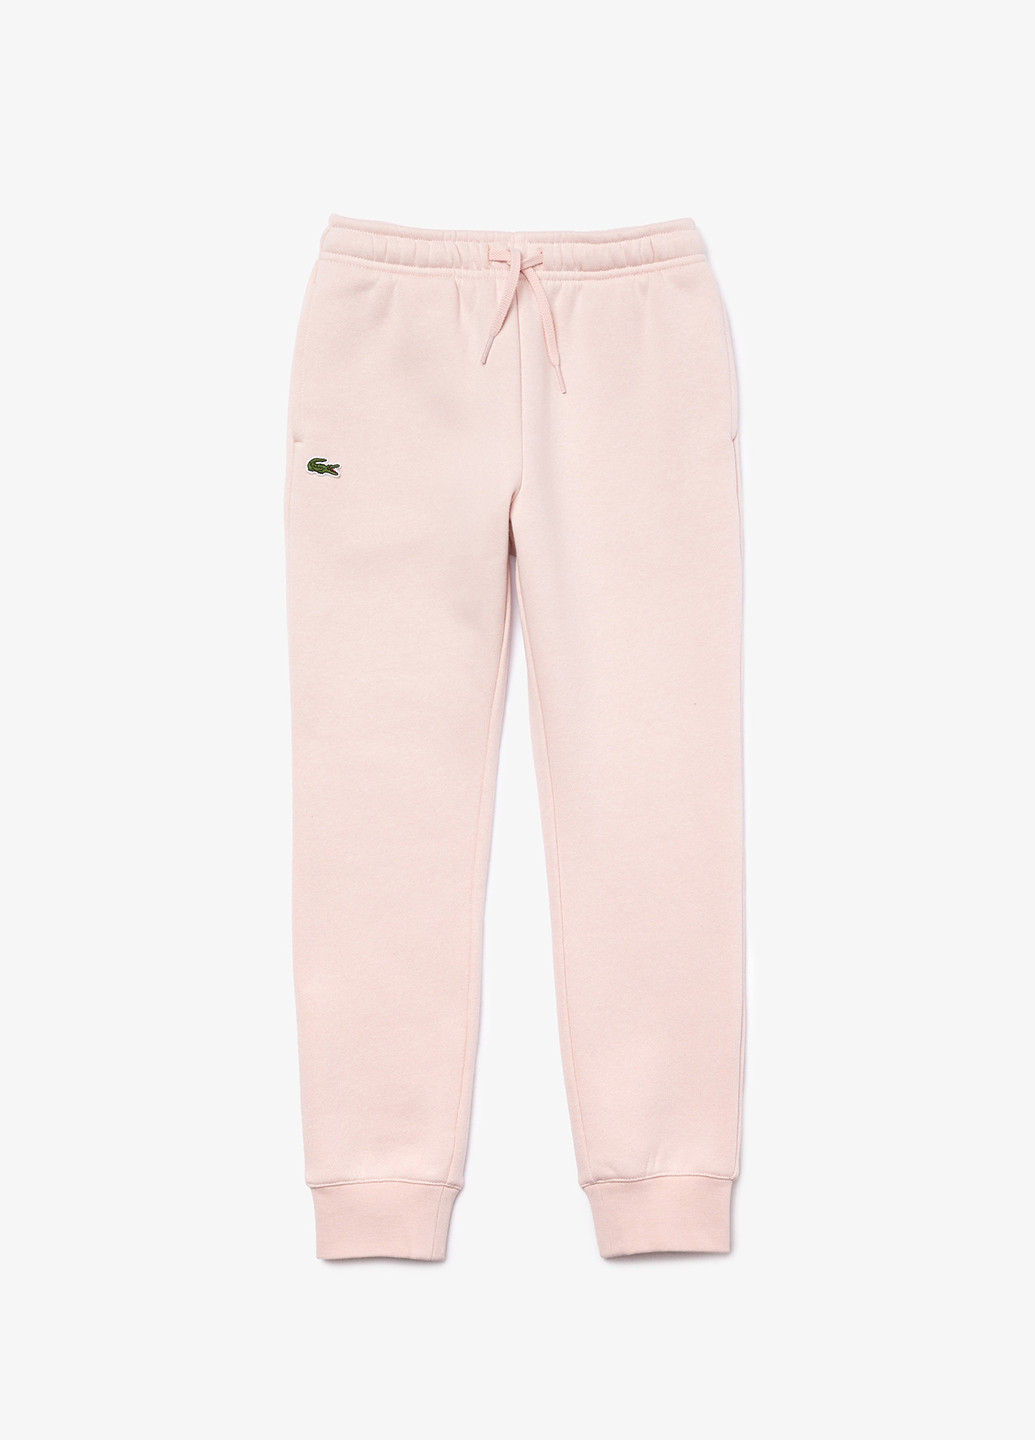 Светло-розовые спортивные демисезонные джоггеры брюки Lacoste